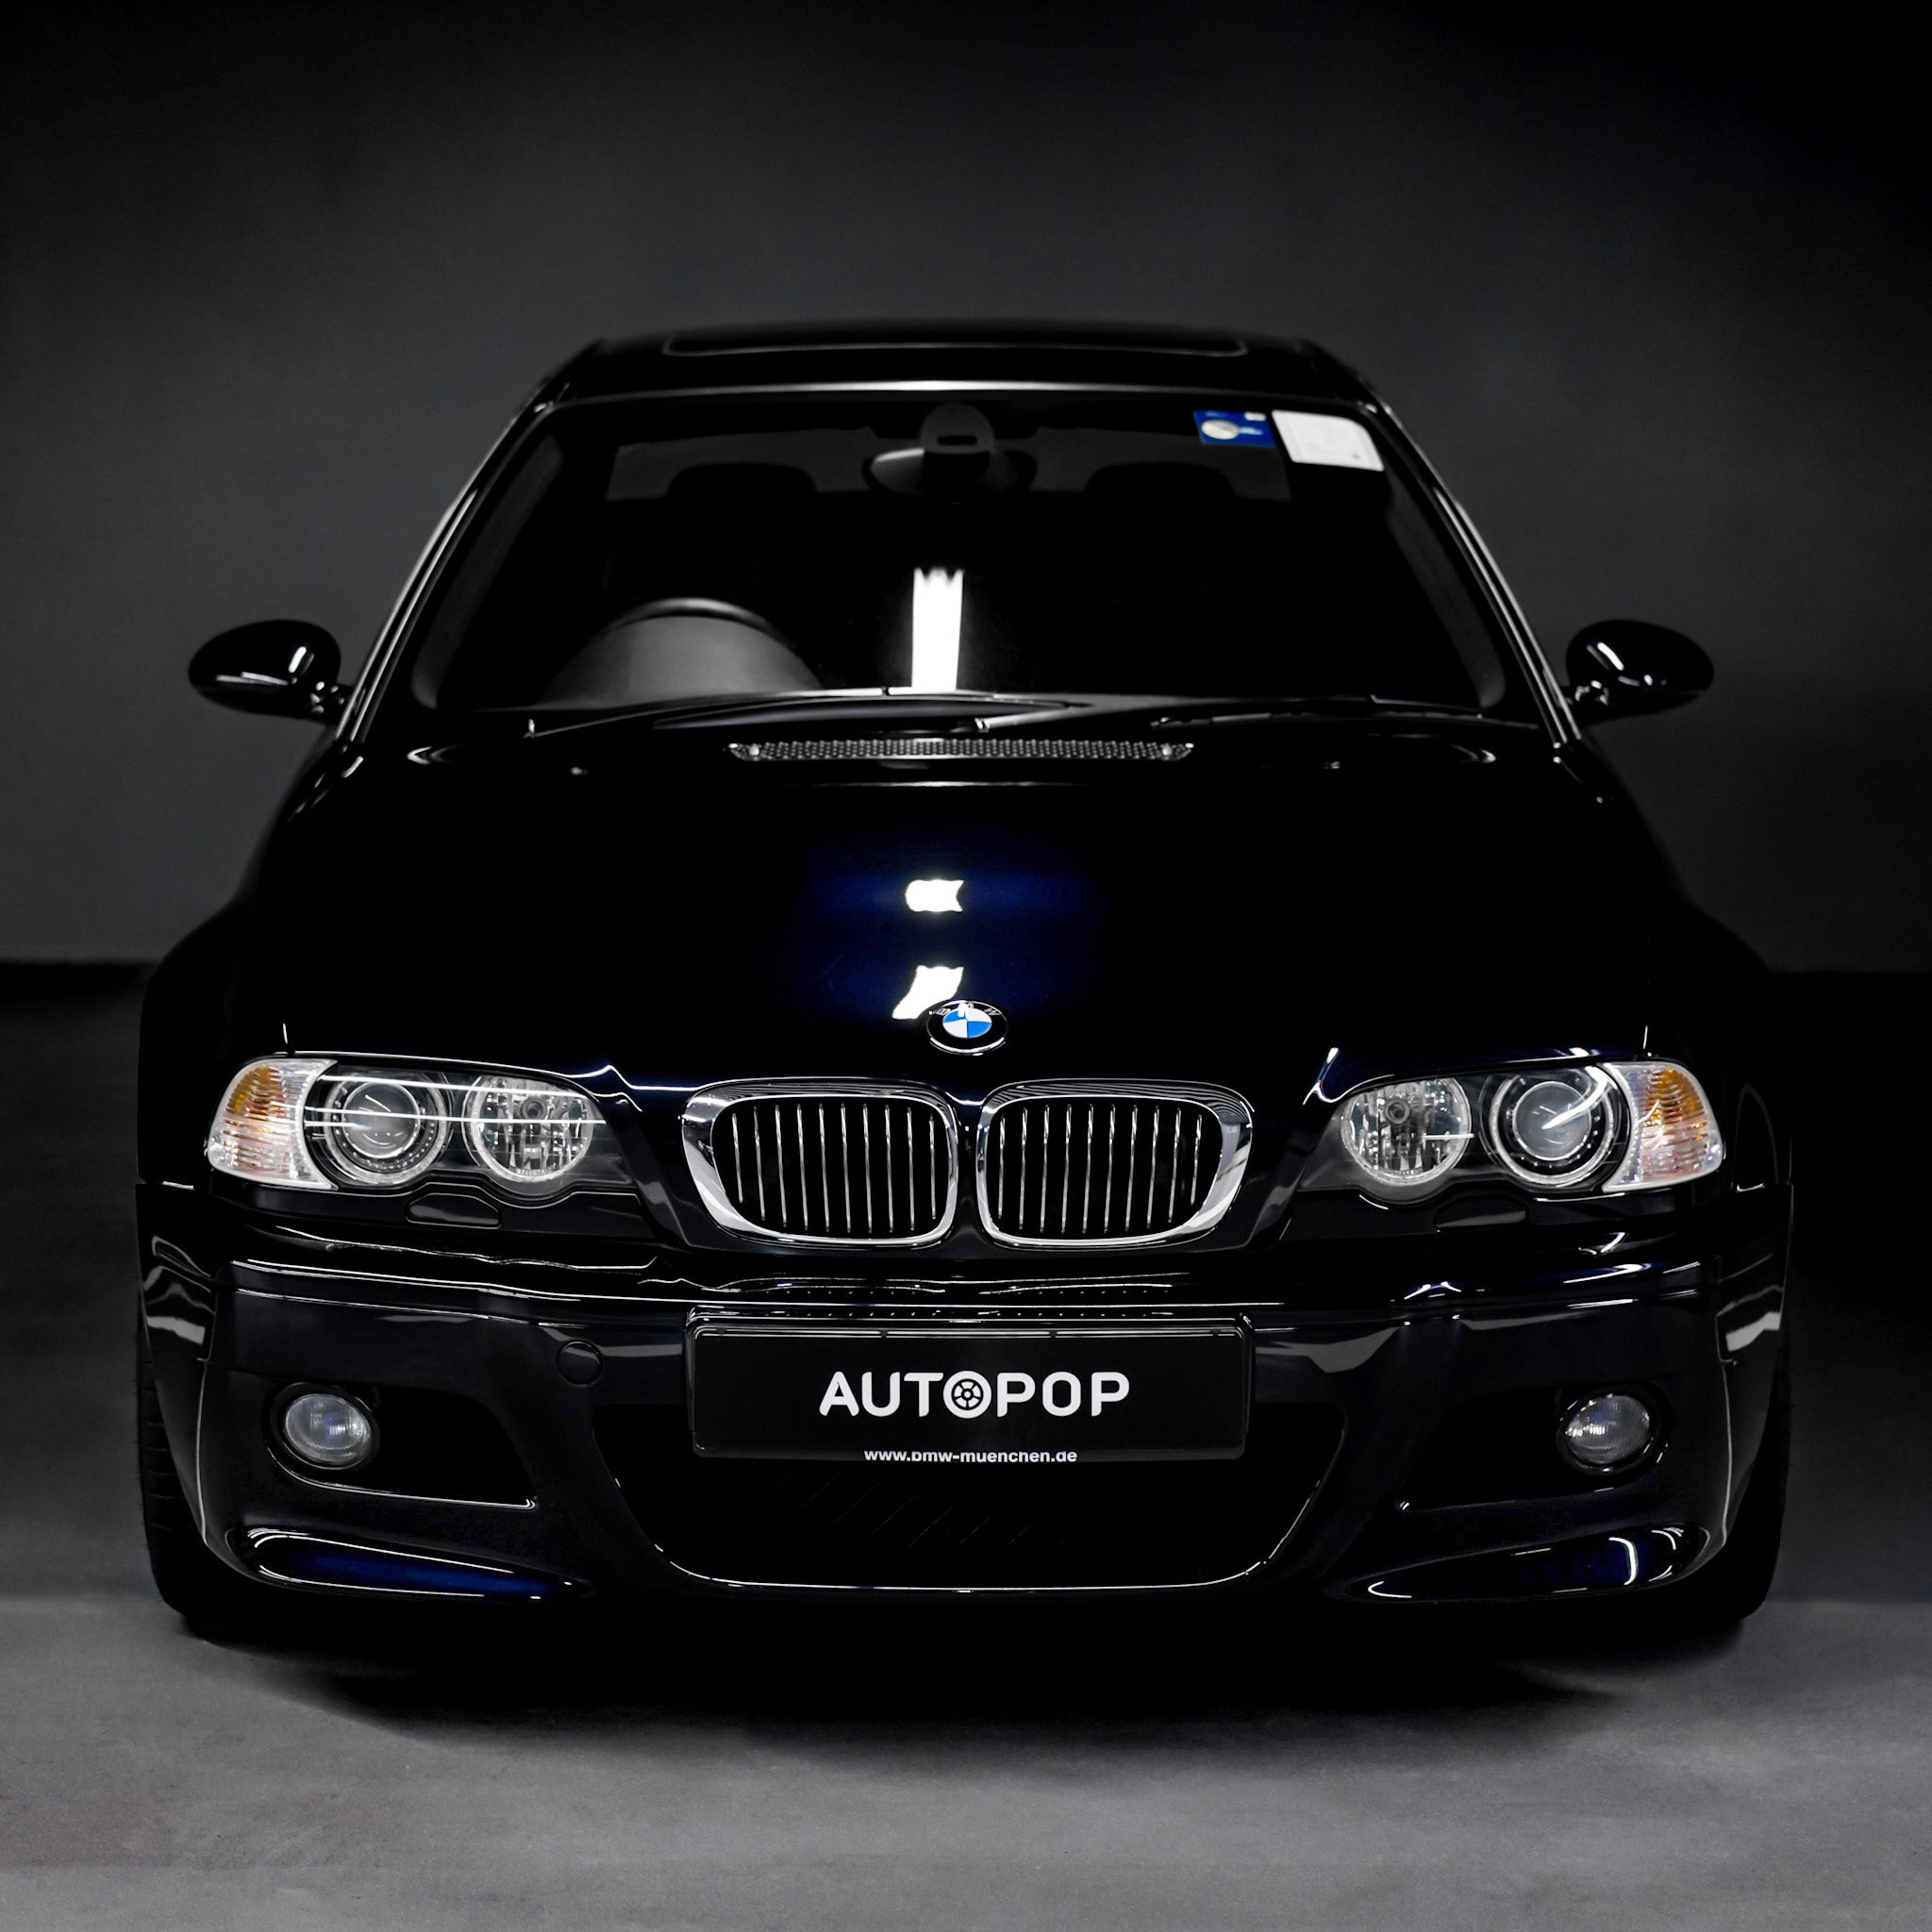 Used BMW E46 M3 Coupe [Carbon Black Metallic] For Sale | Autopop Motors